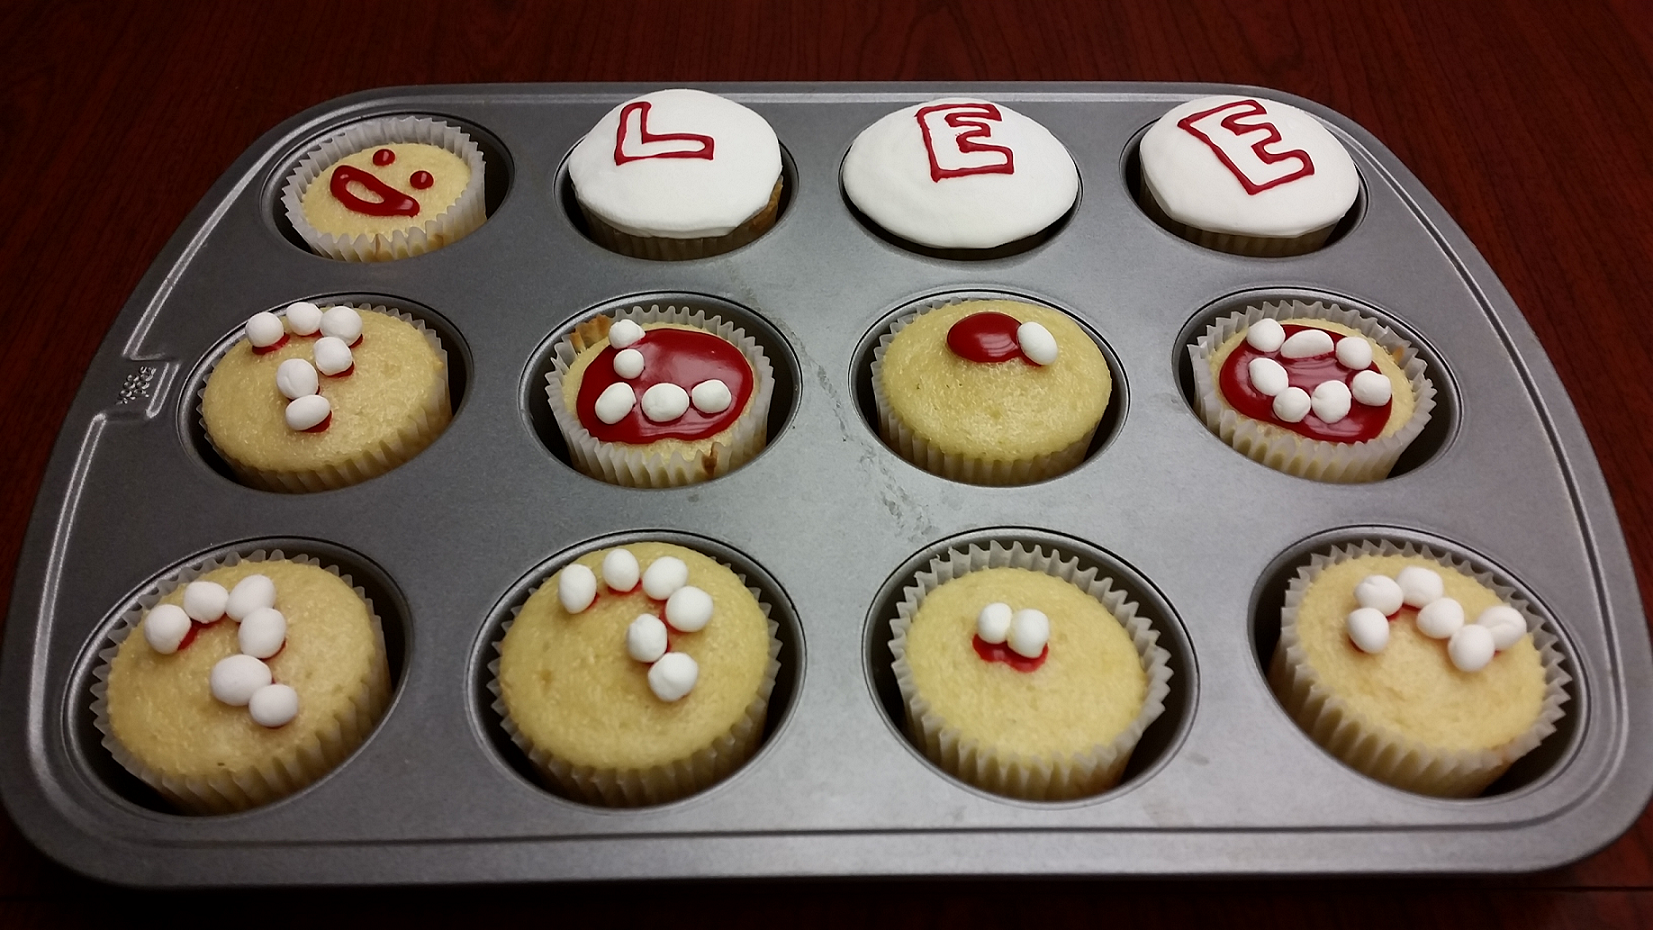 Lee Lab Cupcakes